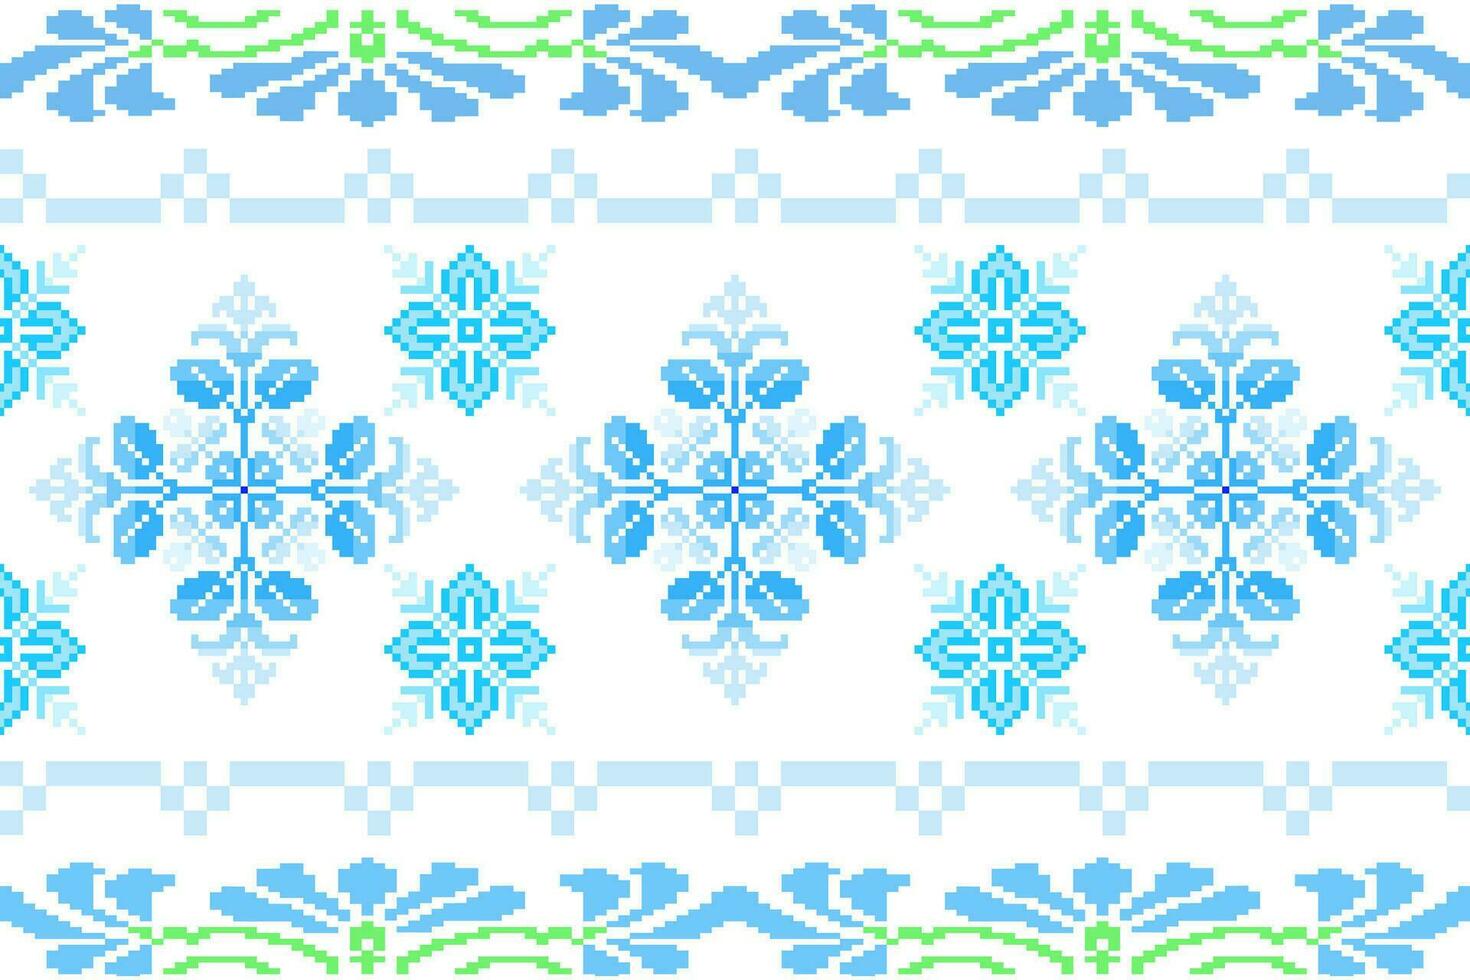 bloemen kruis steek borduurwerk Aan wit achtergrond.geometrisch etnisch oosters naadloos patroon traditioneel.azteken stijl abstract vector illustratie.ontwerp voor textuur, stof, kleding, verpakking, sarong.